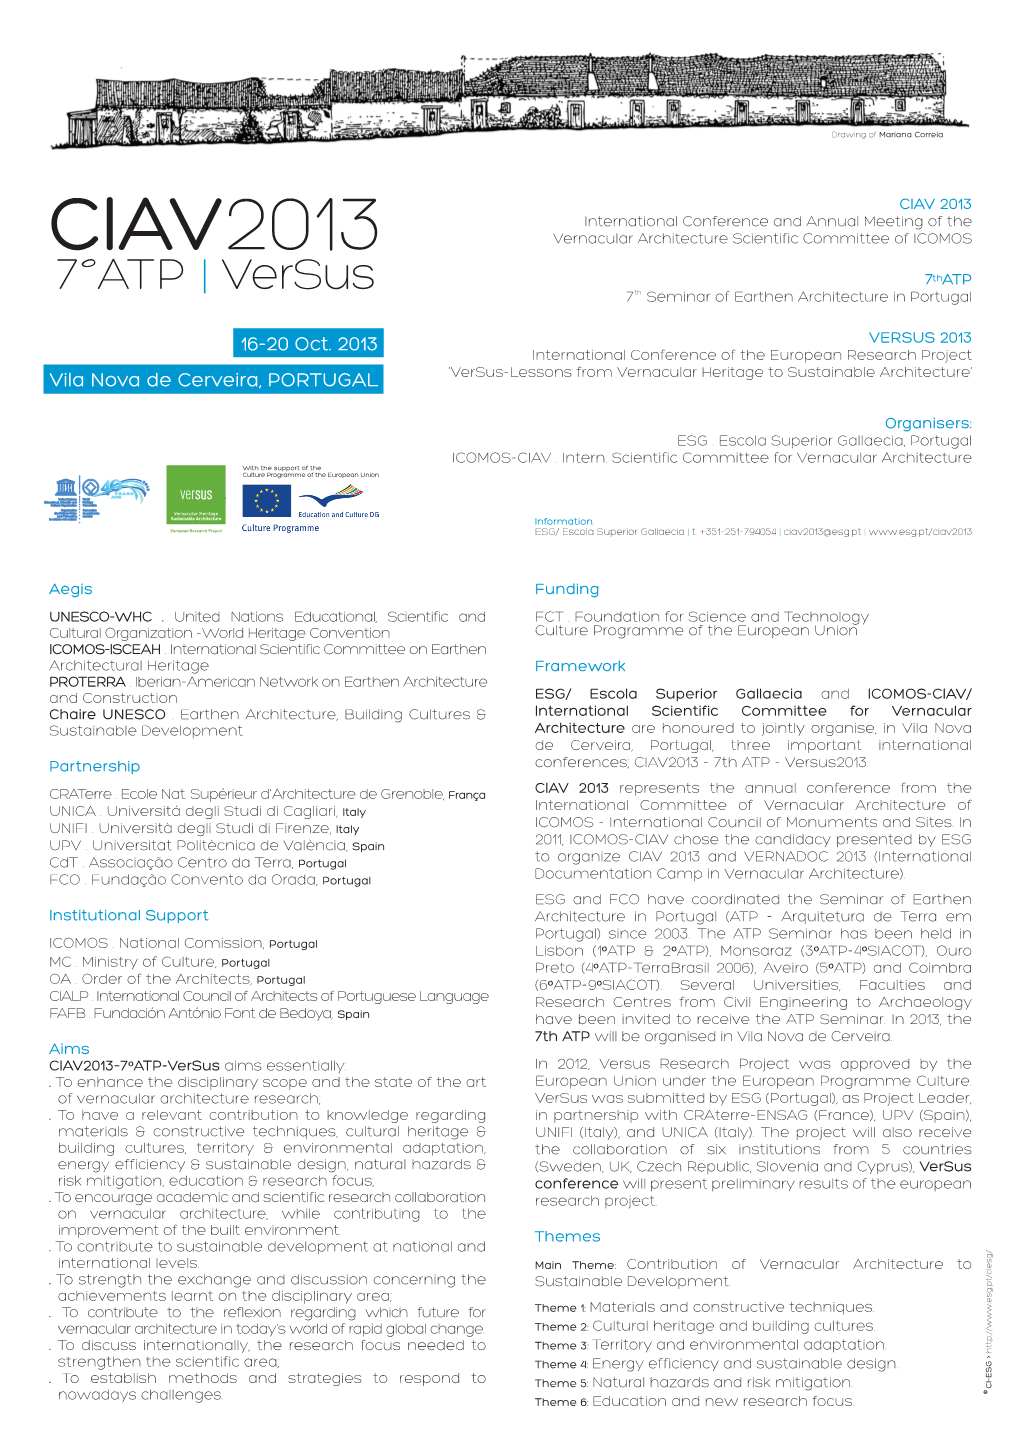 CIAV2013 16-18 Oct 2013